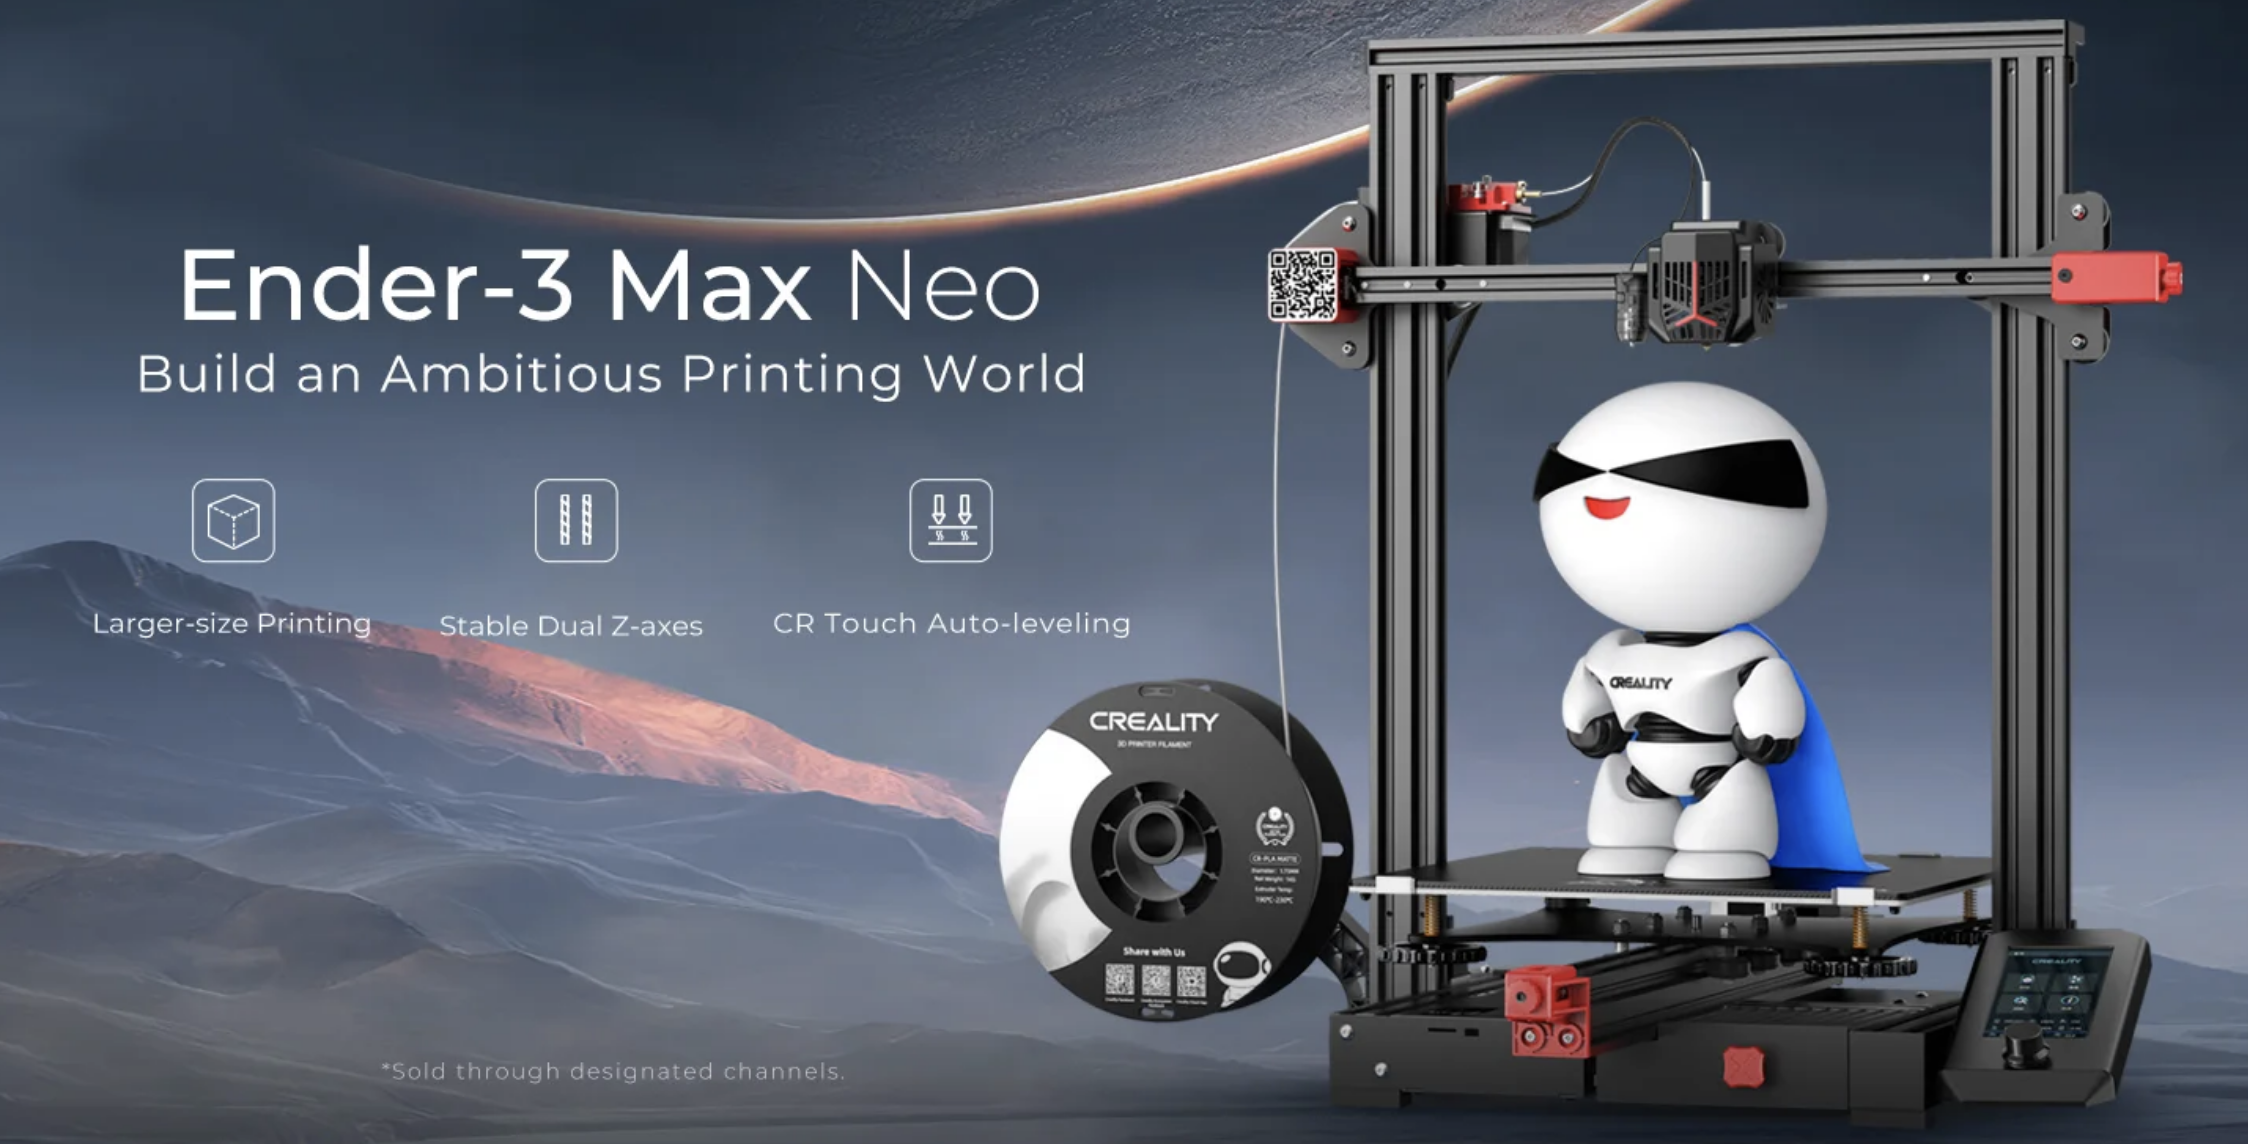 CREALITY ENDER-3 MAX NEO 3D
크리얼리티 엔더-3 맥스 네오, 더 커진 프린팅 
300 X 300X 320mm, Ultra stable dual z축